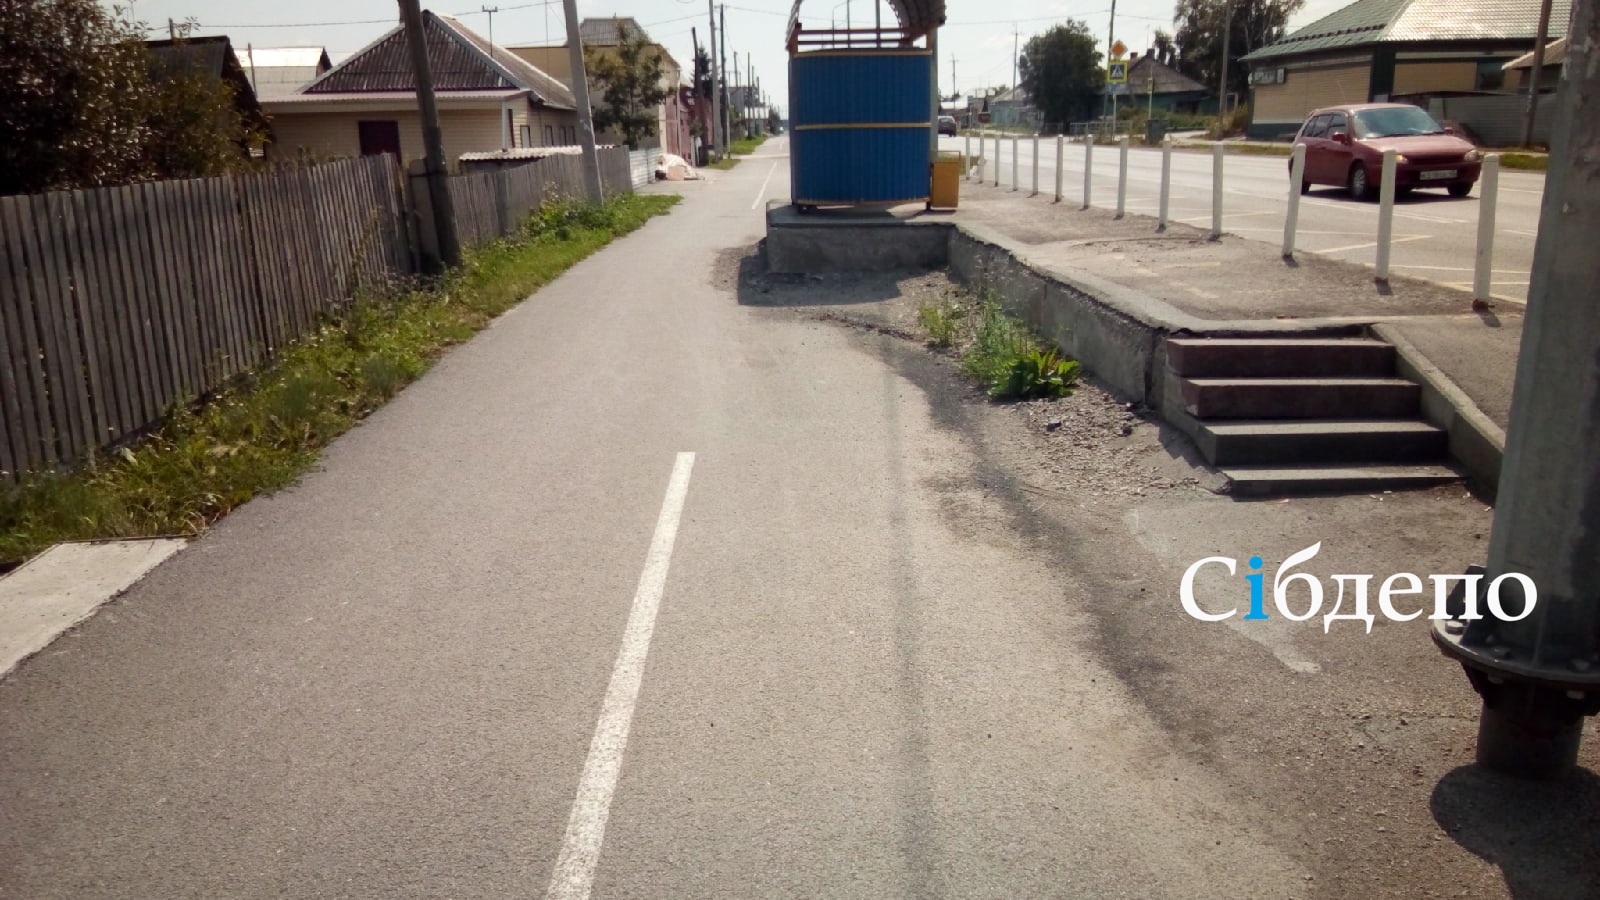 Лбом в остановку: в Кузбассе шокированы велодорожками с непредсказуемыми препятствиями